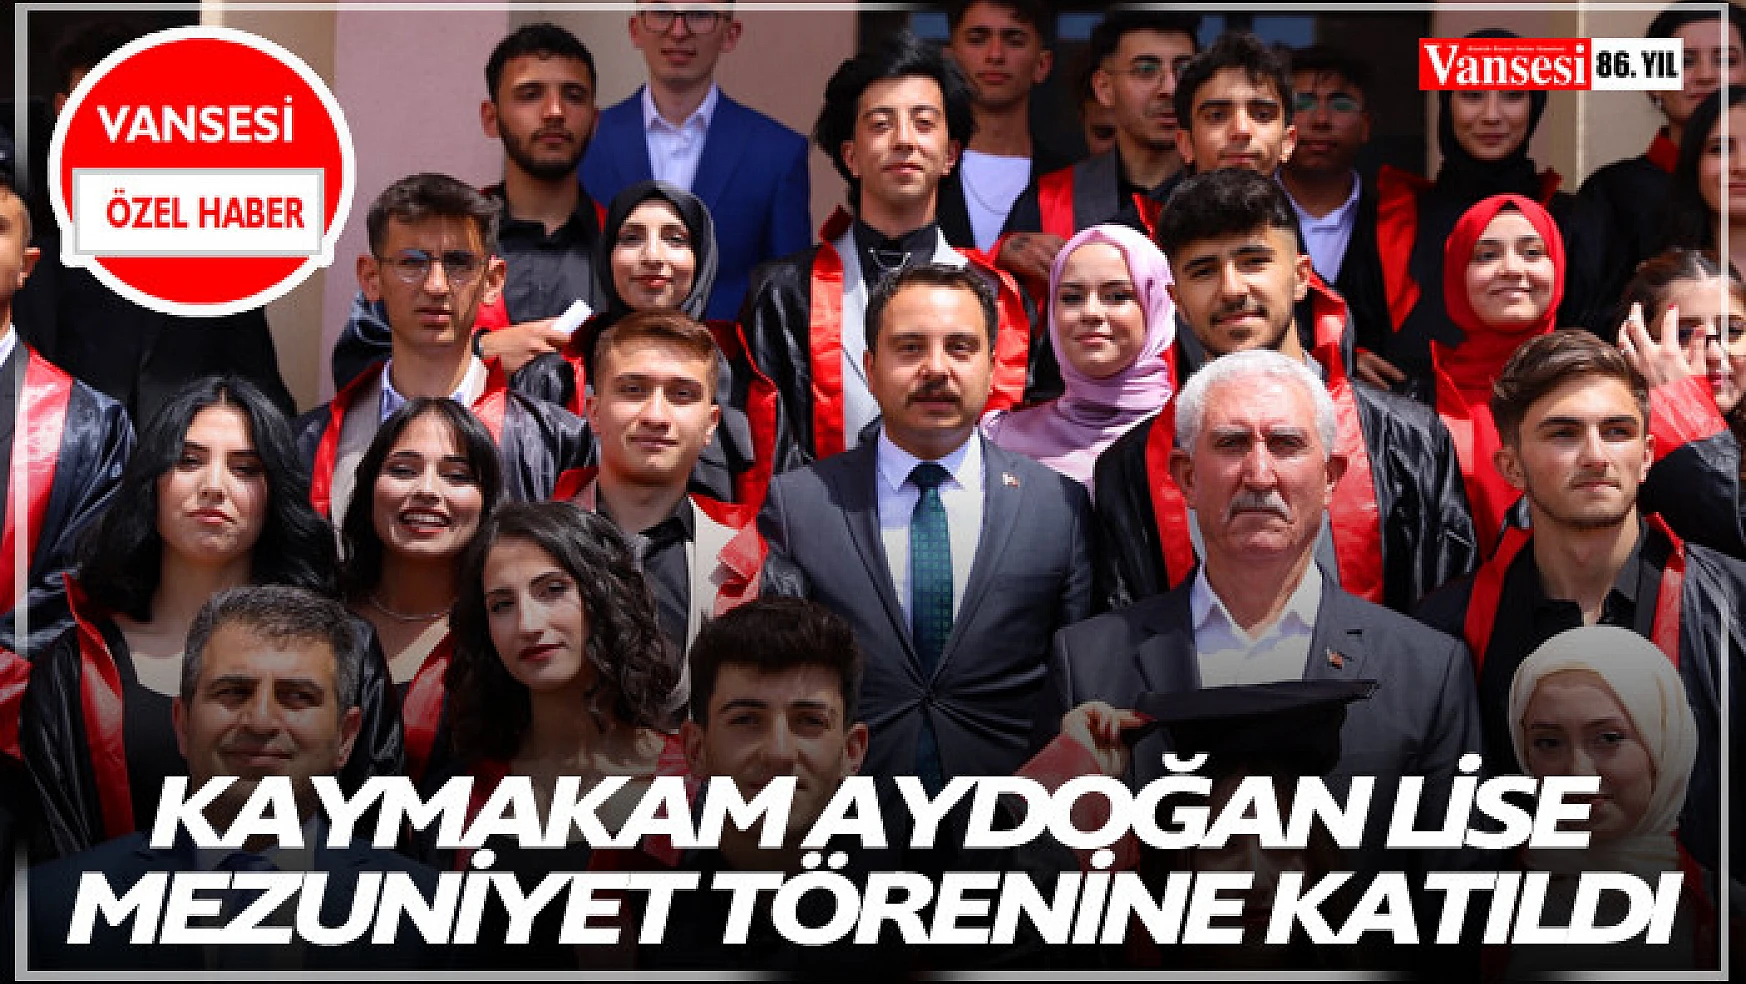 Kaymakam Aydoğan Lise mezuniyet törenine katıldı